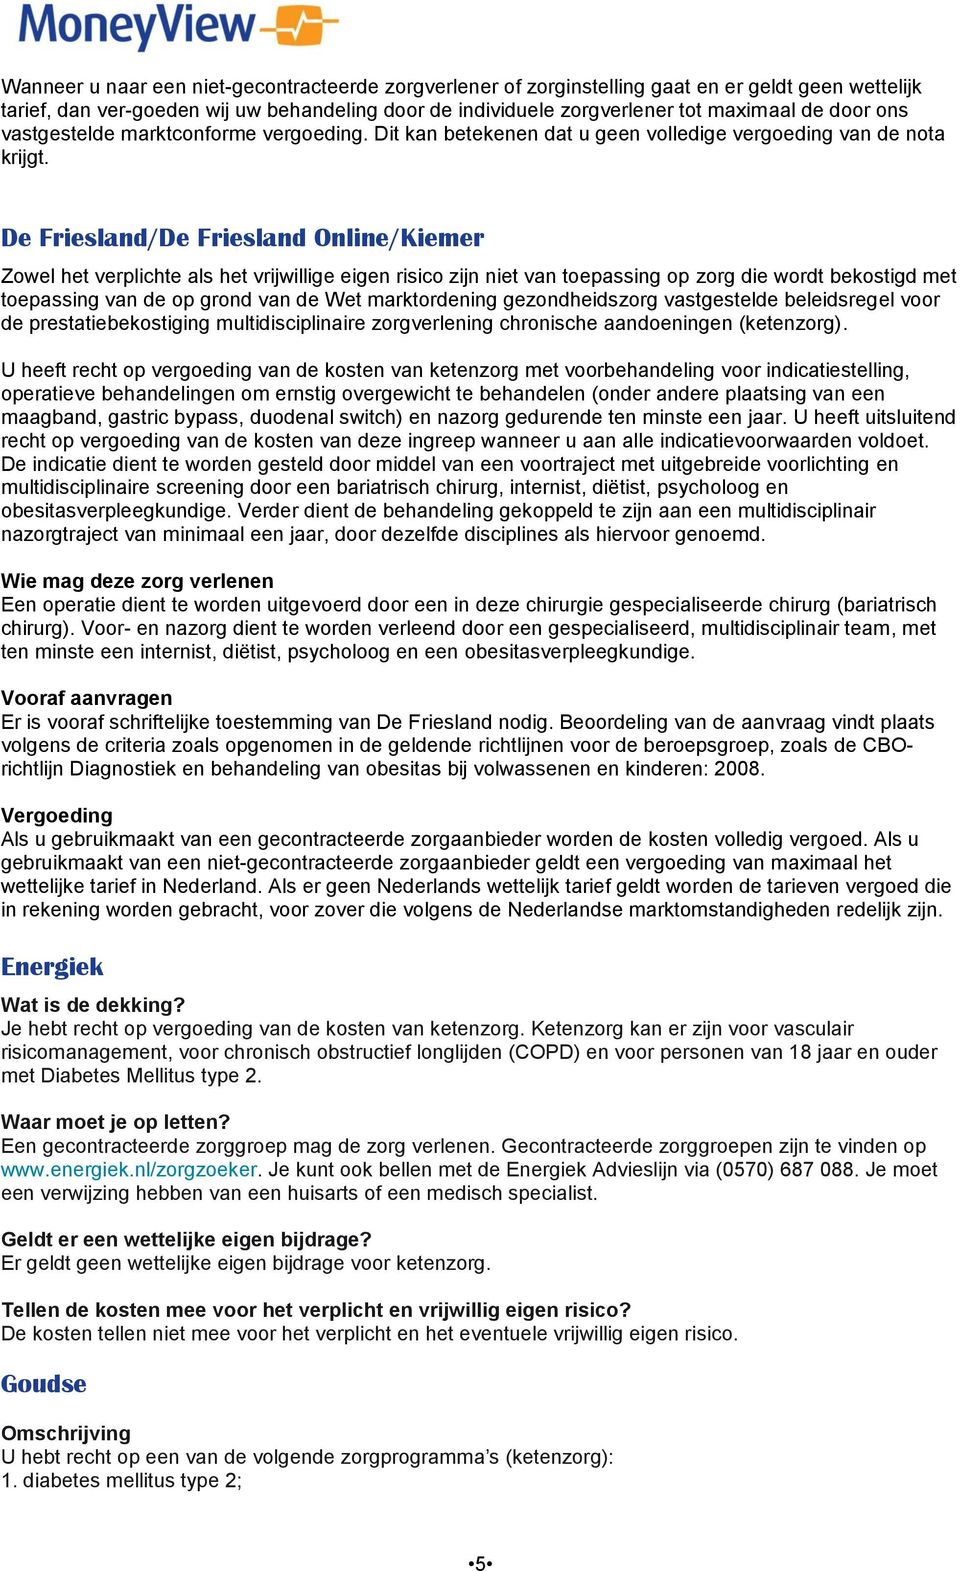 De Friesland/De Friesland Online/Kiemer Zowel het verplichte als het vrijwillige eigen risico zijn niet van toepassing op zorg die wordt bekostigd met toepassing van de op grond van de Wet